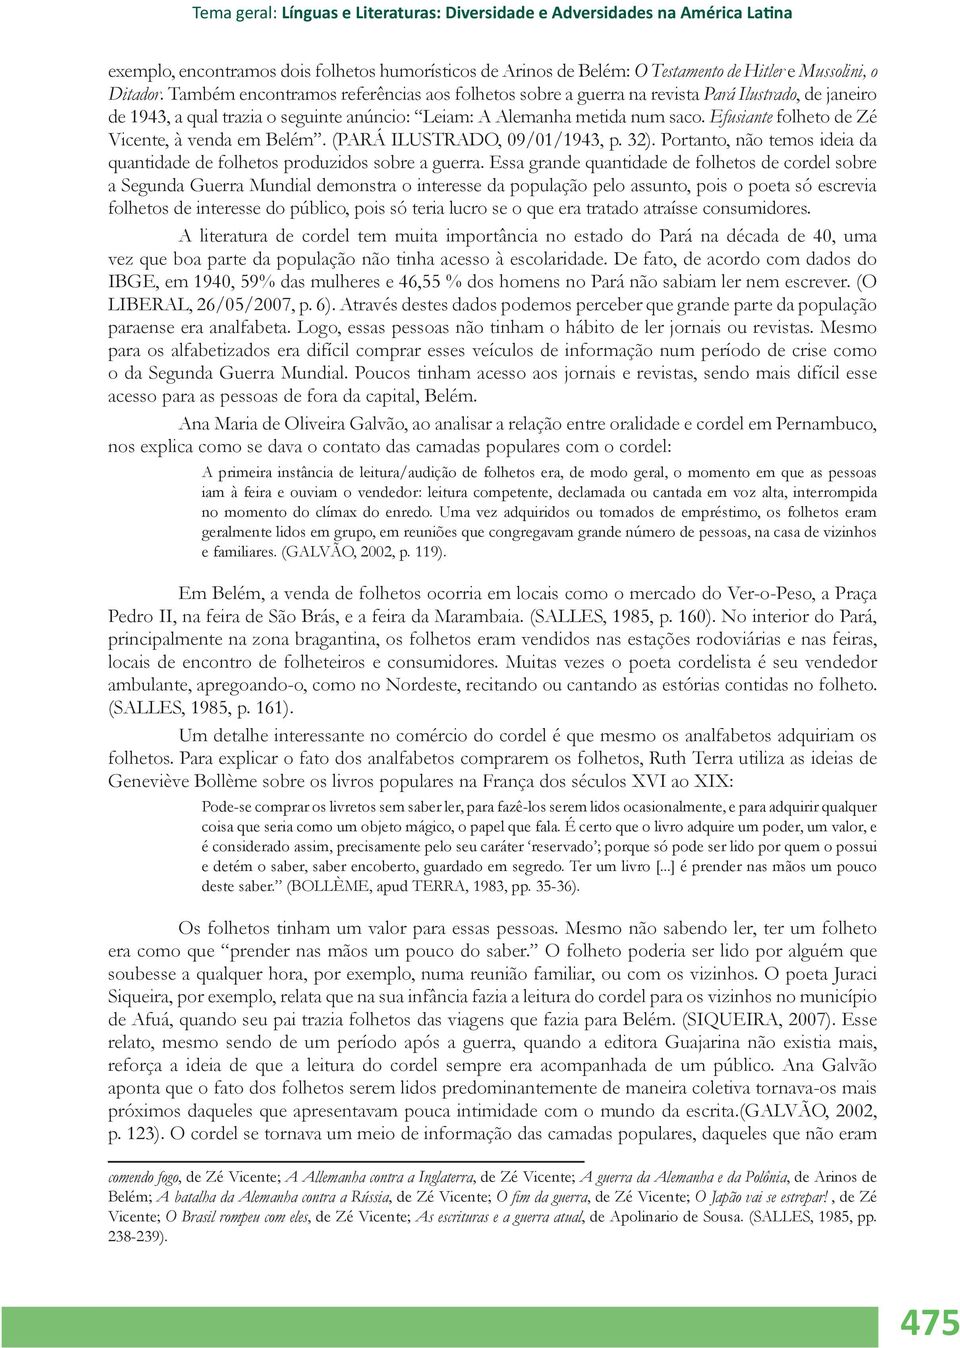 Efusiante folheto de Zé Vicente, à venda em Belém. (PARÁ ILUSTRADO, 09/01/1943, p. 32). Portanto, não temos ideia da quantidade de folhetos produzidos sobre a guerra.